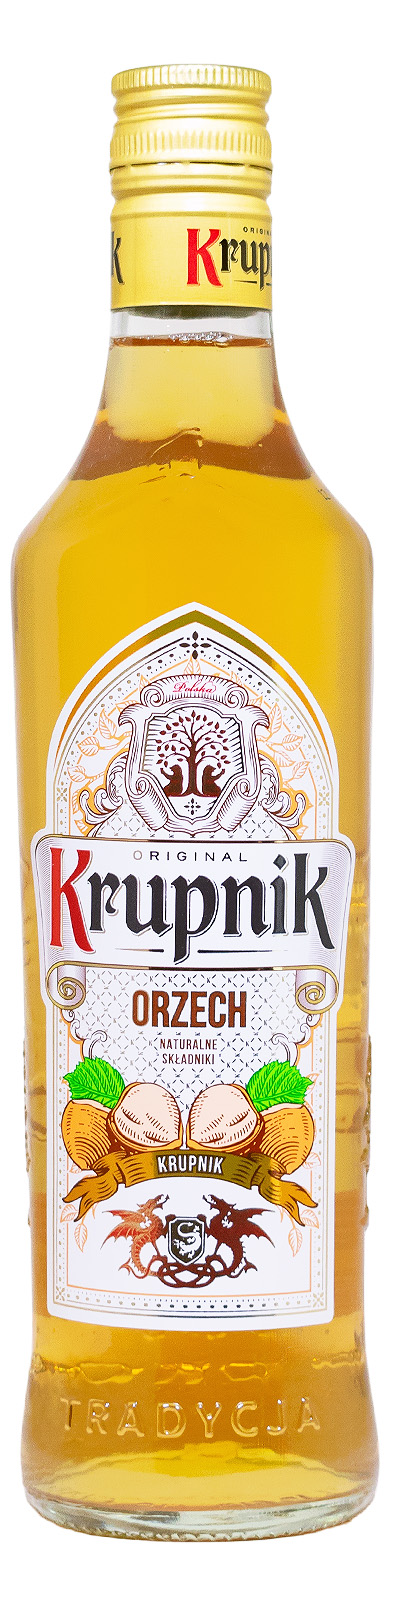 Krupnik Nuss Likör - 0,5L 28% vol